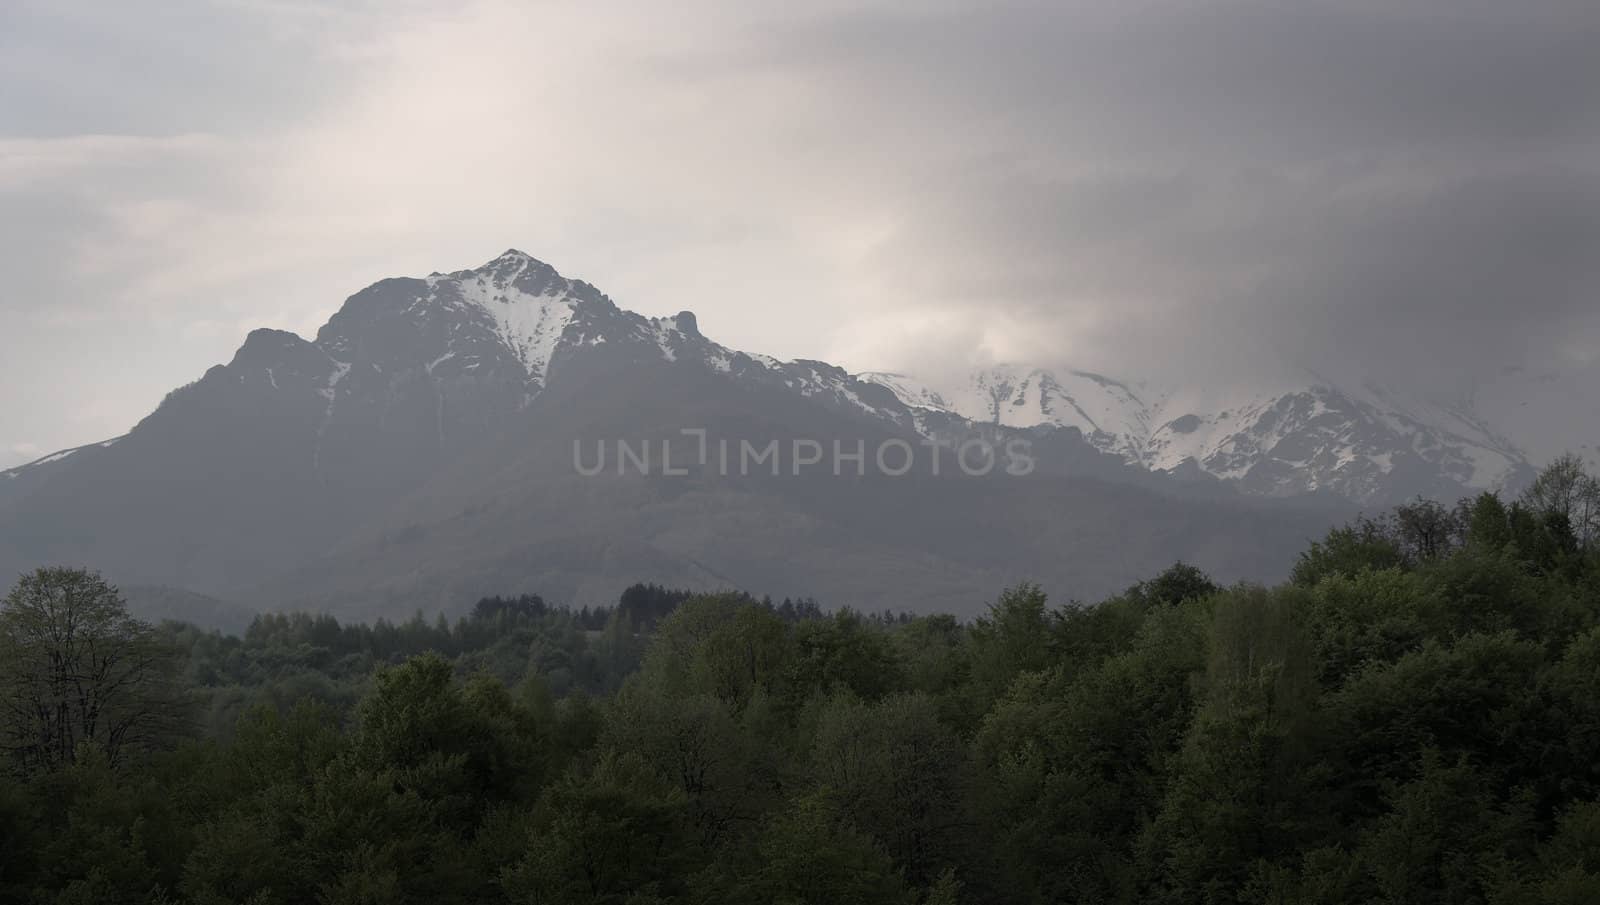 mountain view by alexkosev